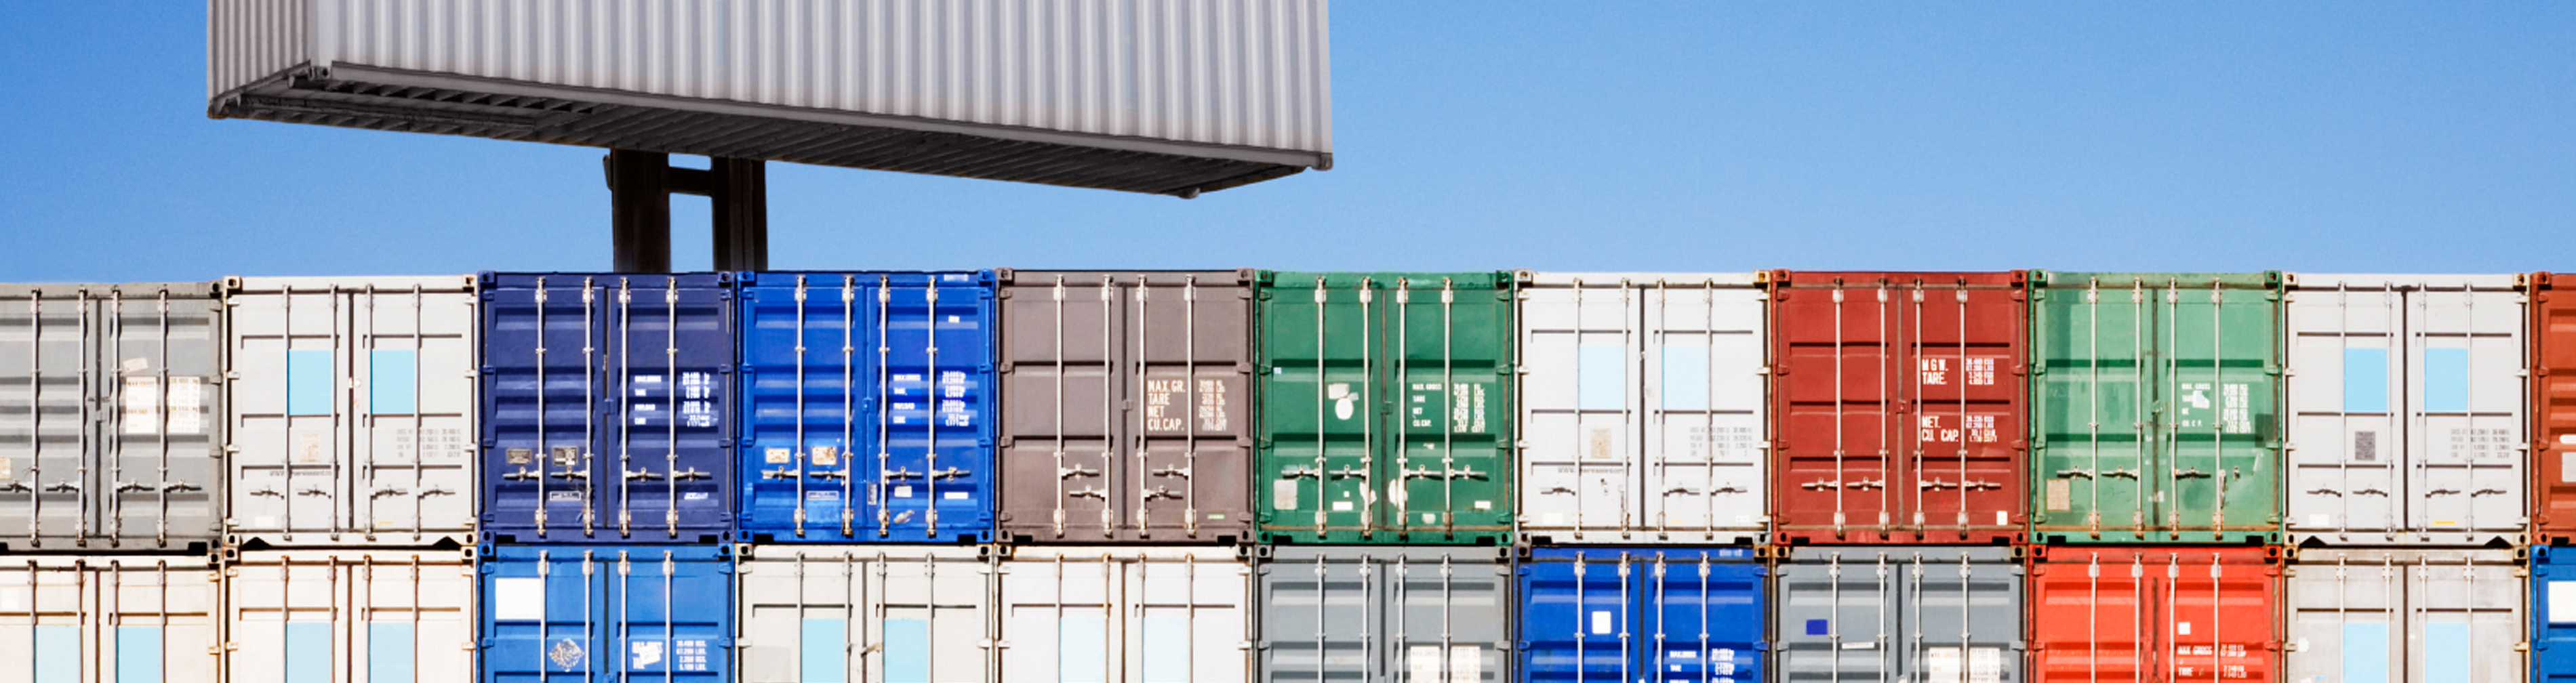 Persistenter Speicher für Container: Die Bereitstellung wird einfacher